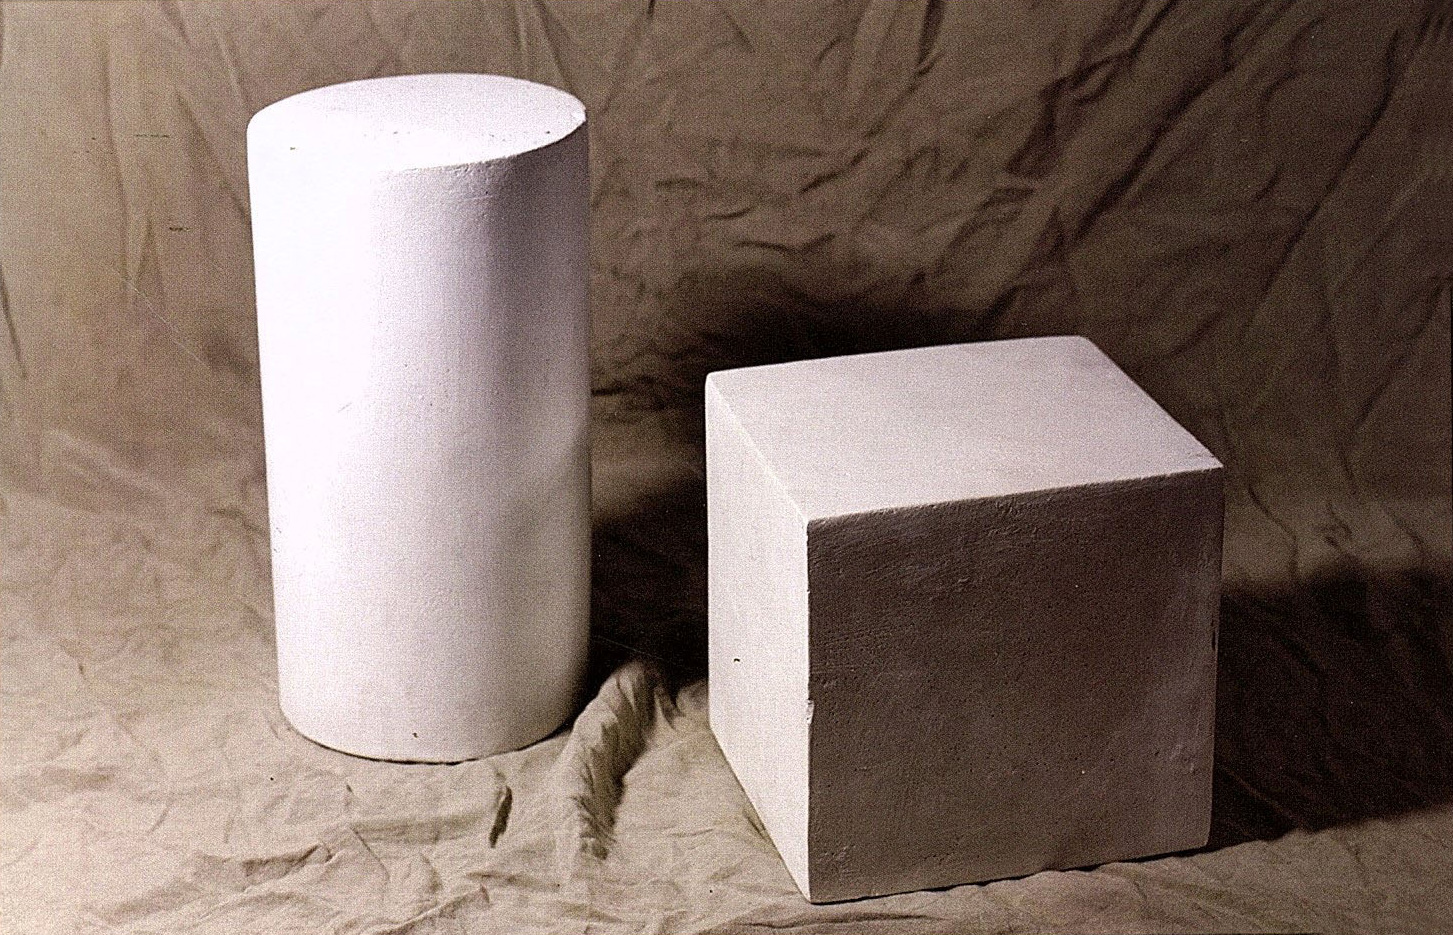 石膏圆柱体正方体组合素描高清照片